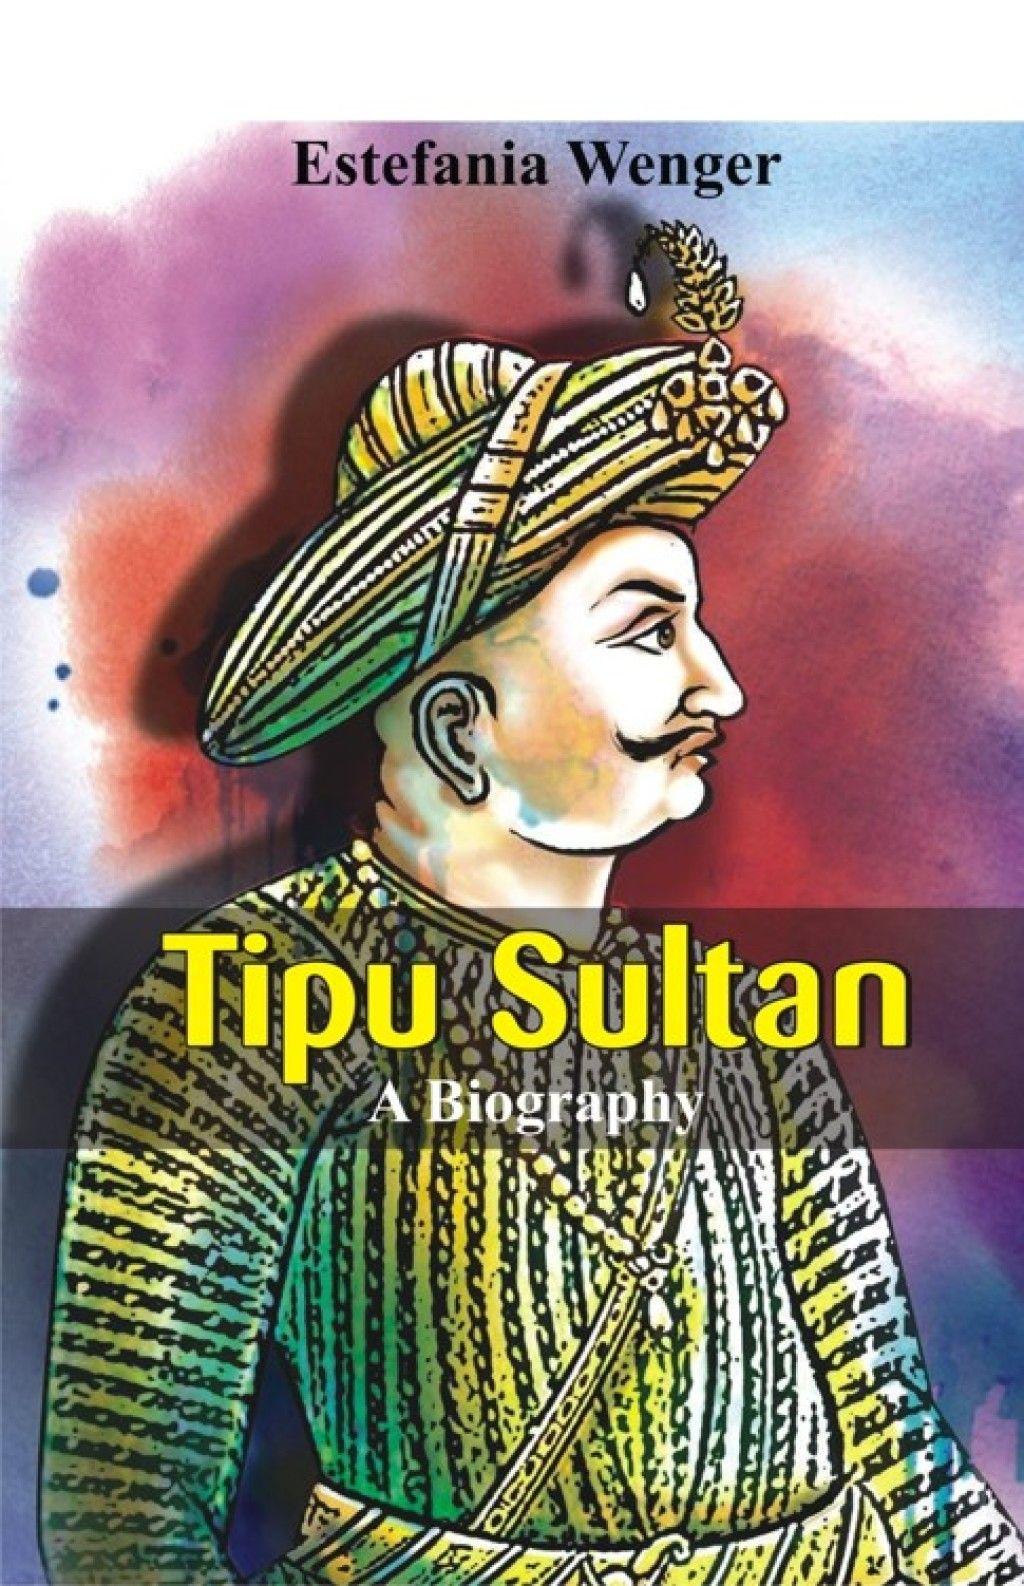 Tipu Sultan Wallpapers - Wallpaper Cave